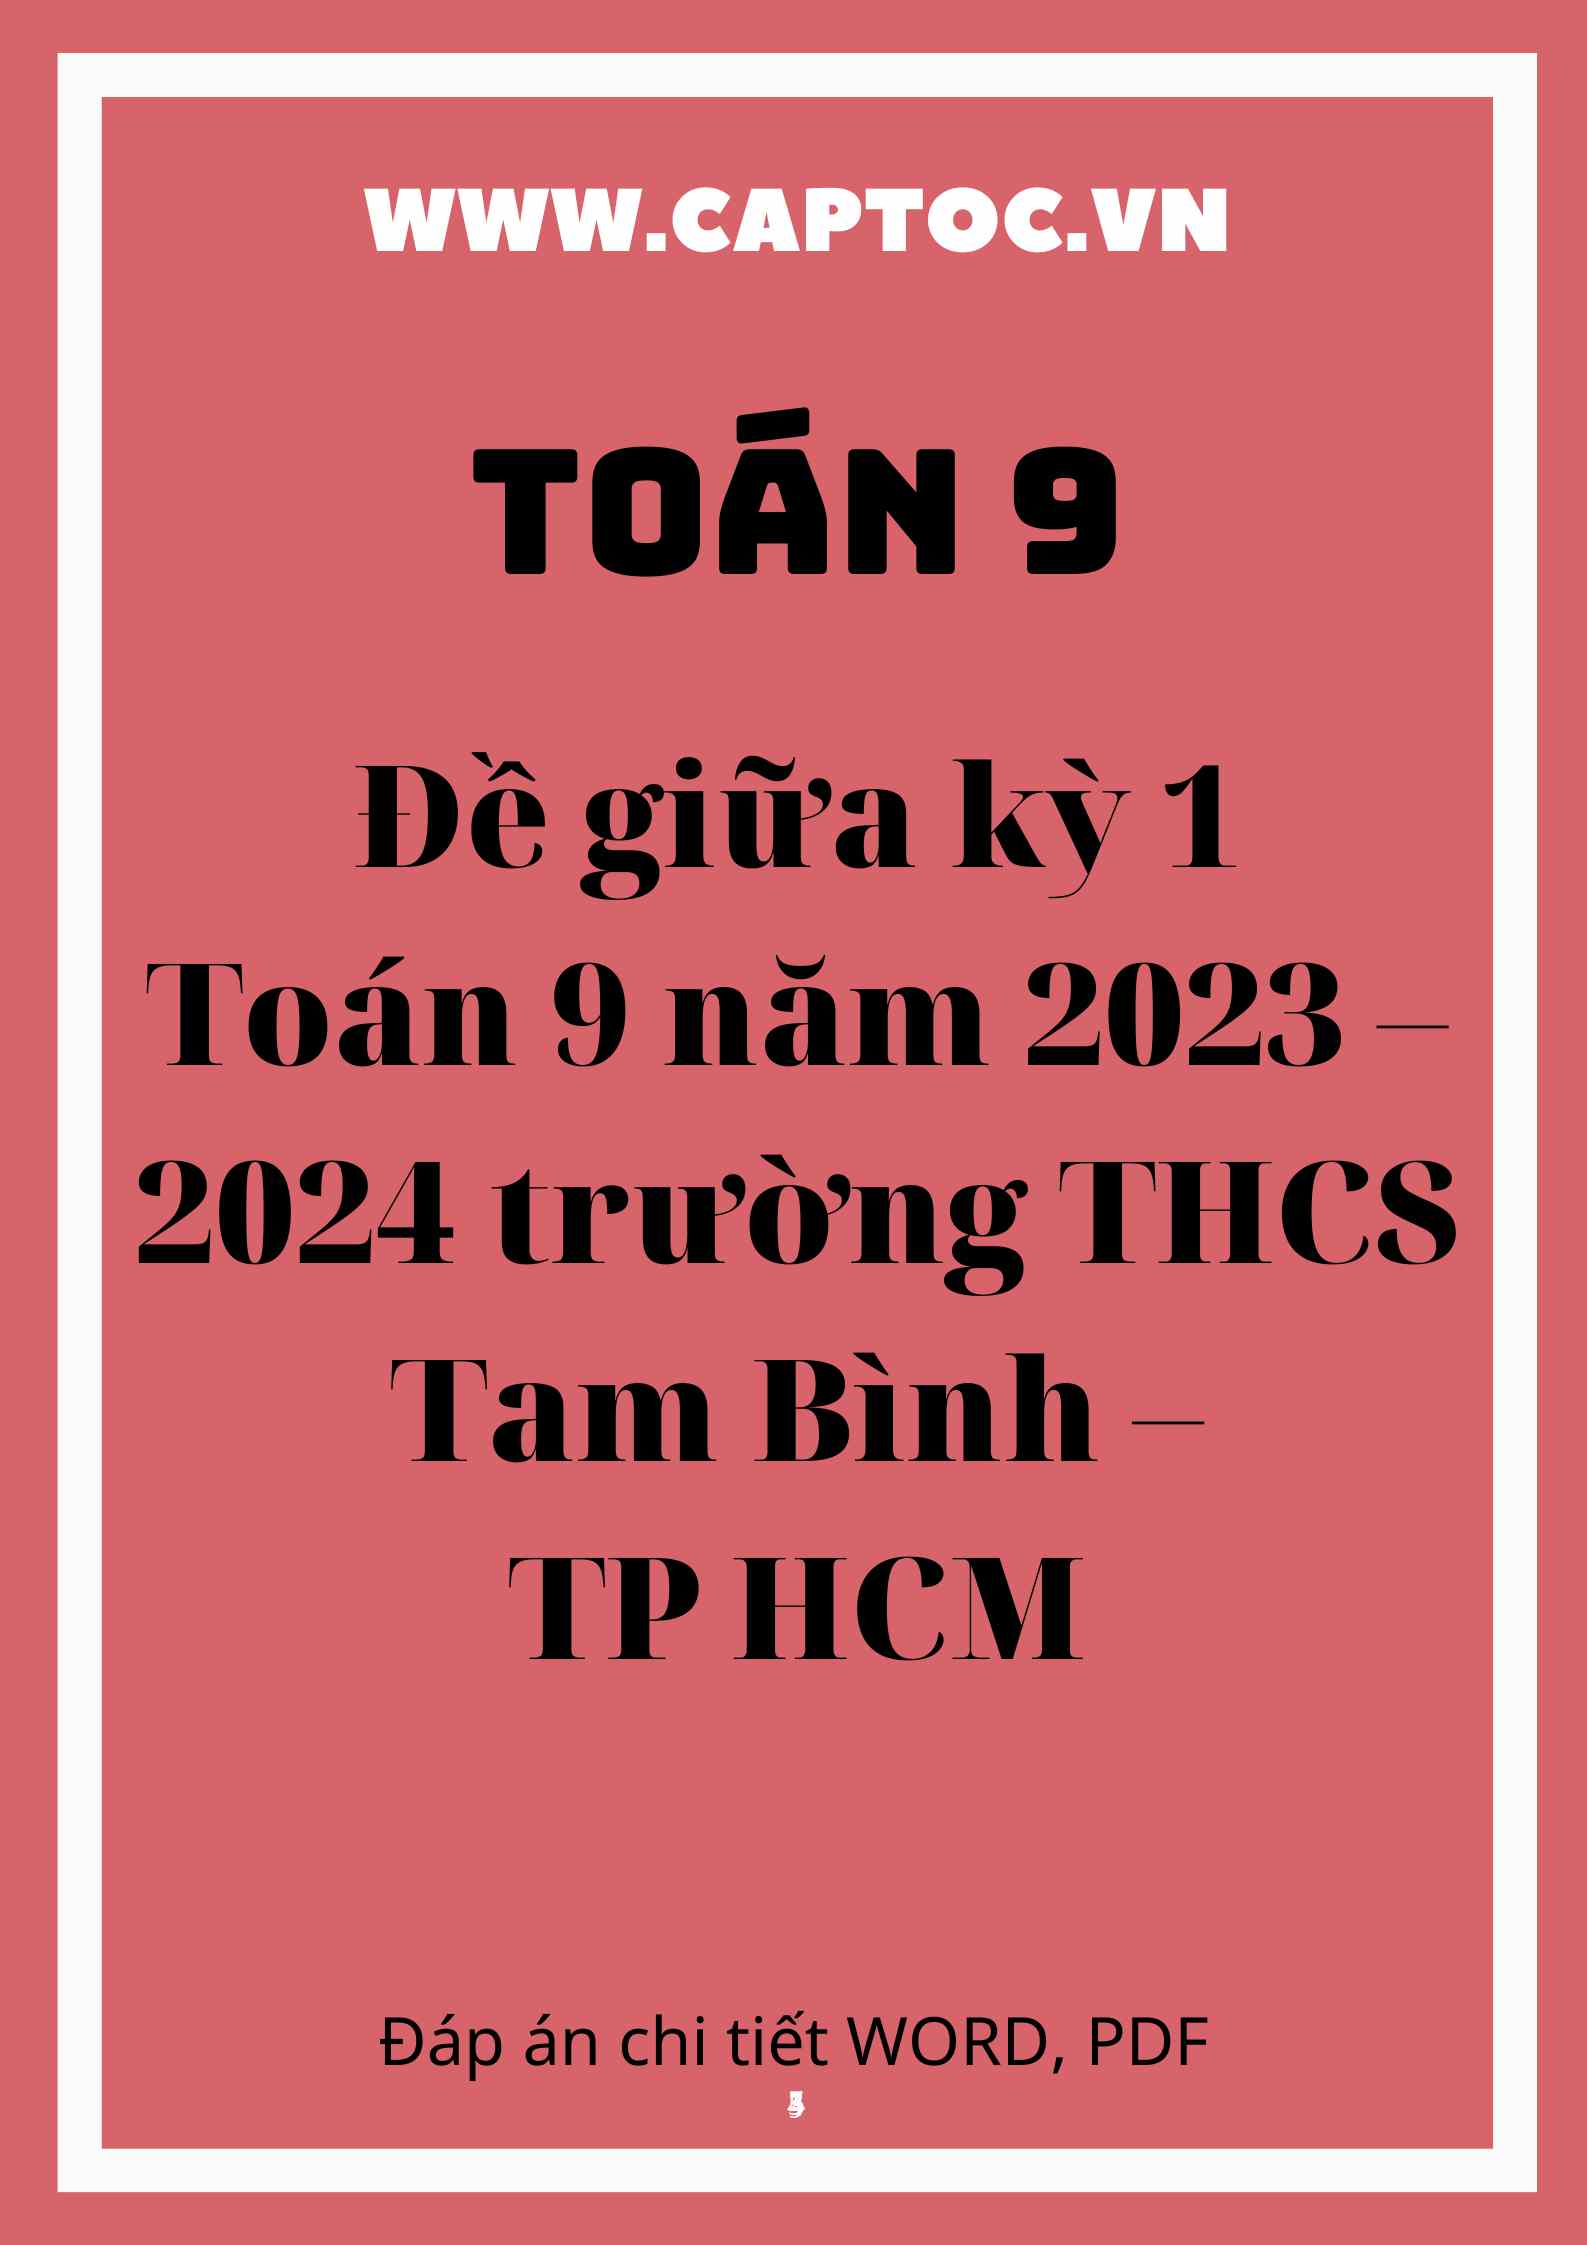 Đề giữa kỳ 1 Toán 9 năm 2023 – 2024 trường THCS Tam Bình – TP HCM